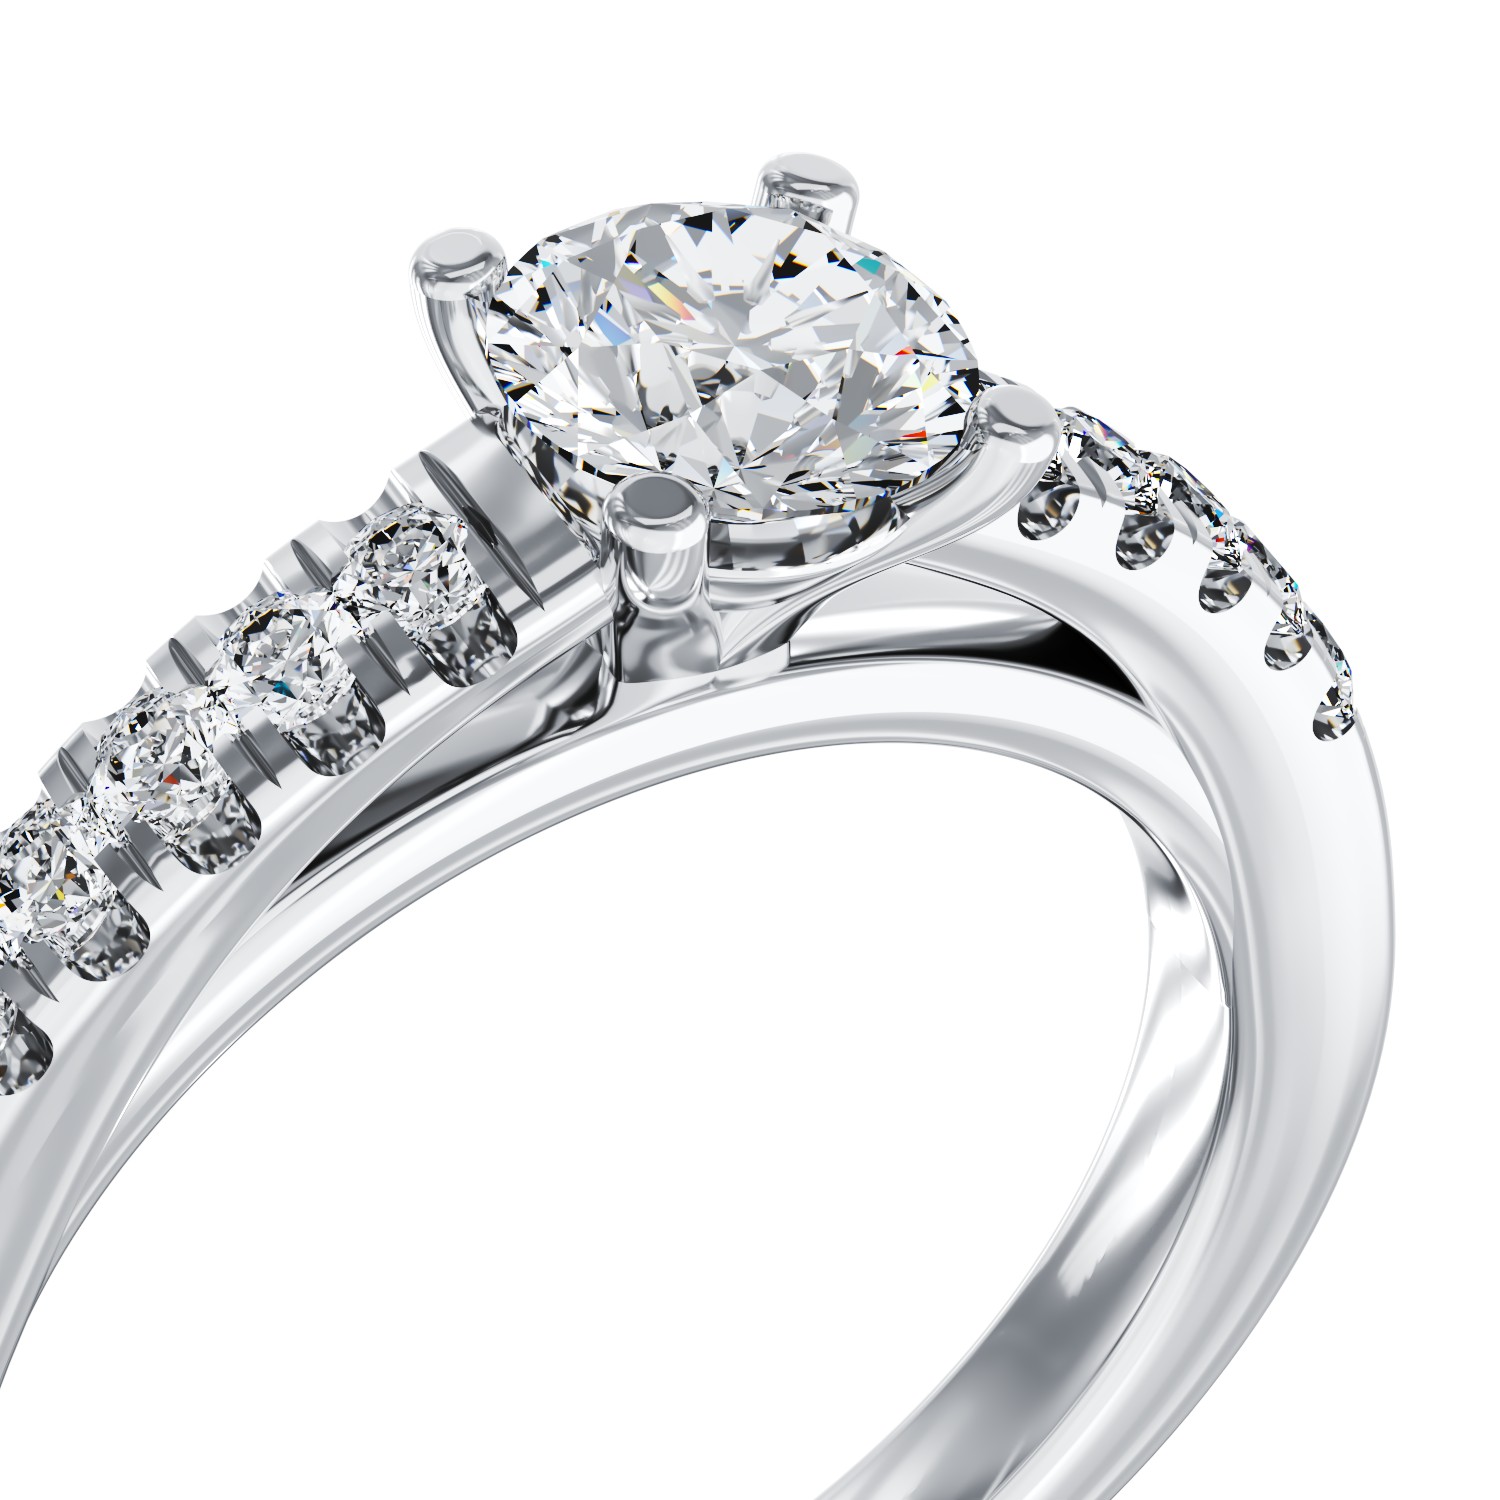 Eljegyzési gyűrű 18K-os fehér aranyból 0,5ct gyémánttal és 0,15ct gyémántokkal. Gramm: 3,45